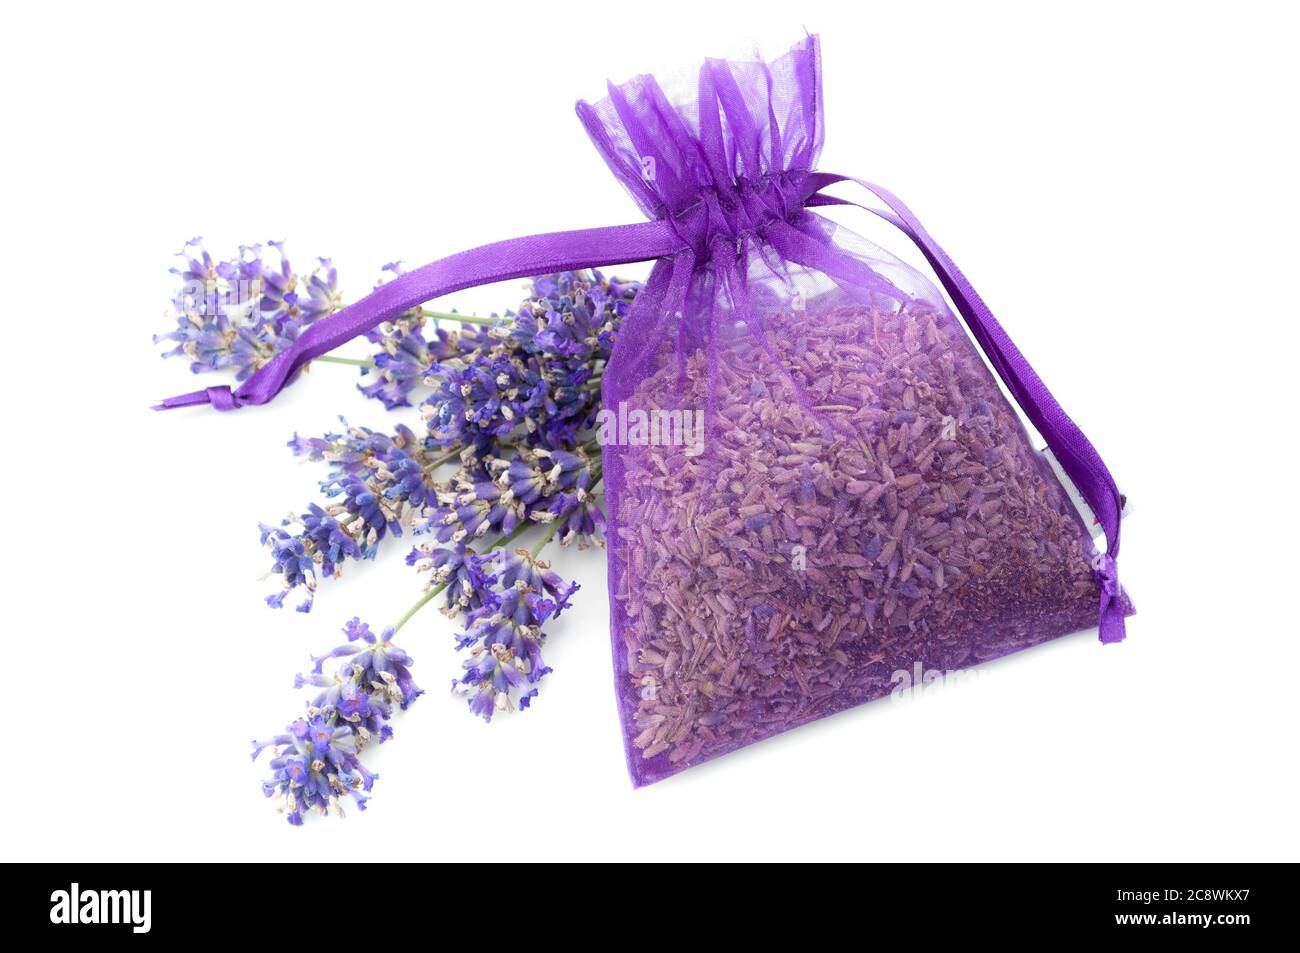 Parfum floral estival, cadeau naturiste relaxant et parfum floral thème concept avec lavande séchée dans un sac en tissu violet à côté des fleurs violettes fraîches Banque D'Images